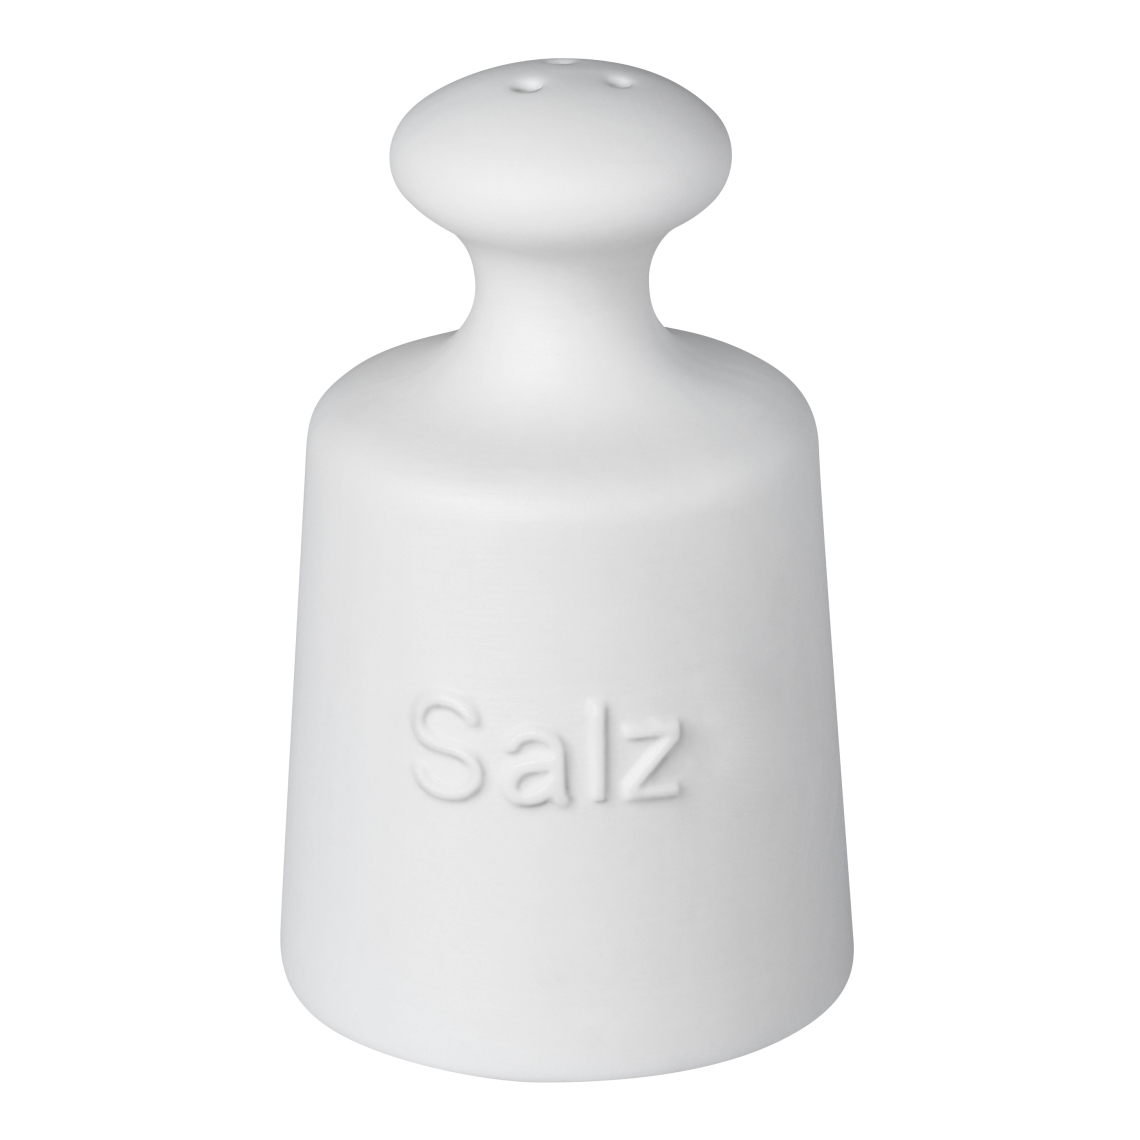 Salz und Pfeffer Streuer - "Tischgewichte Salz und Pfeffer" - räder